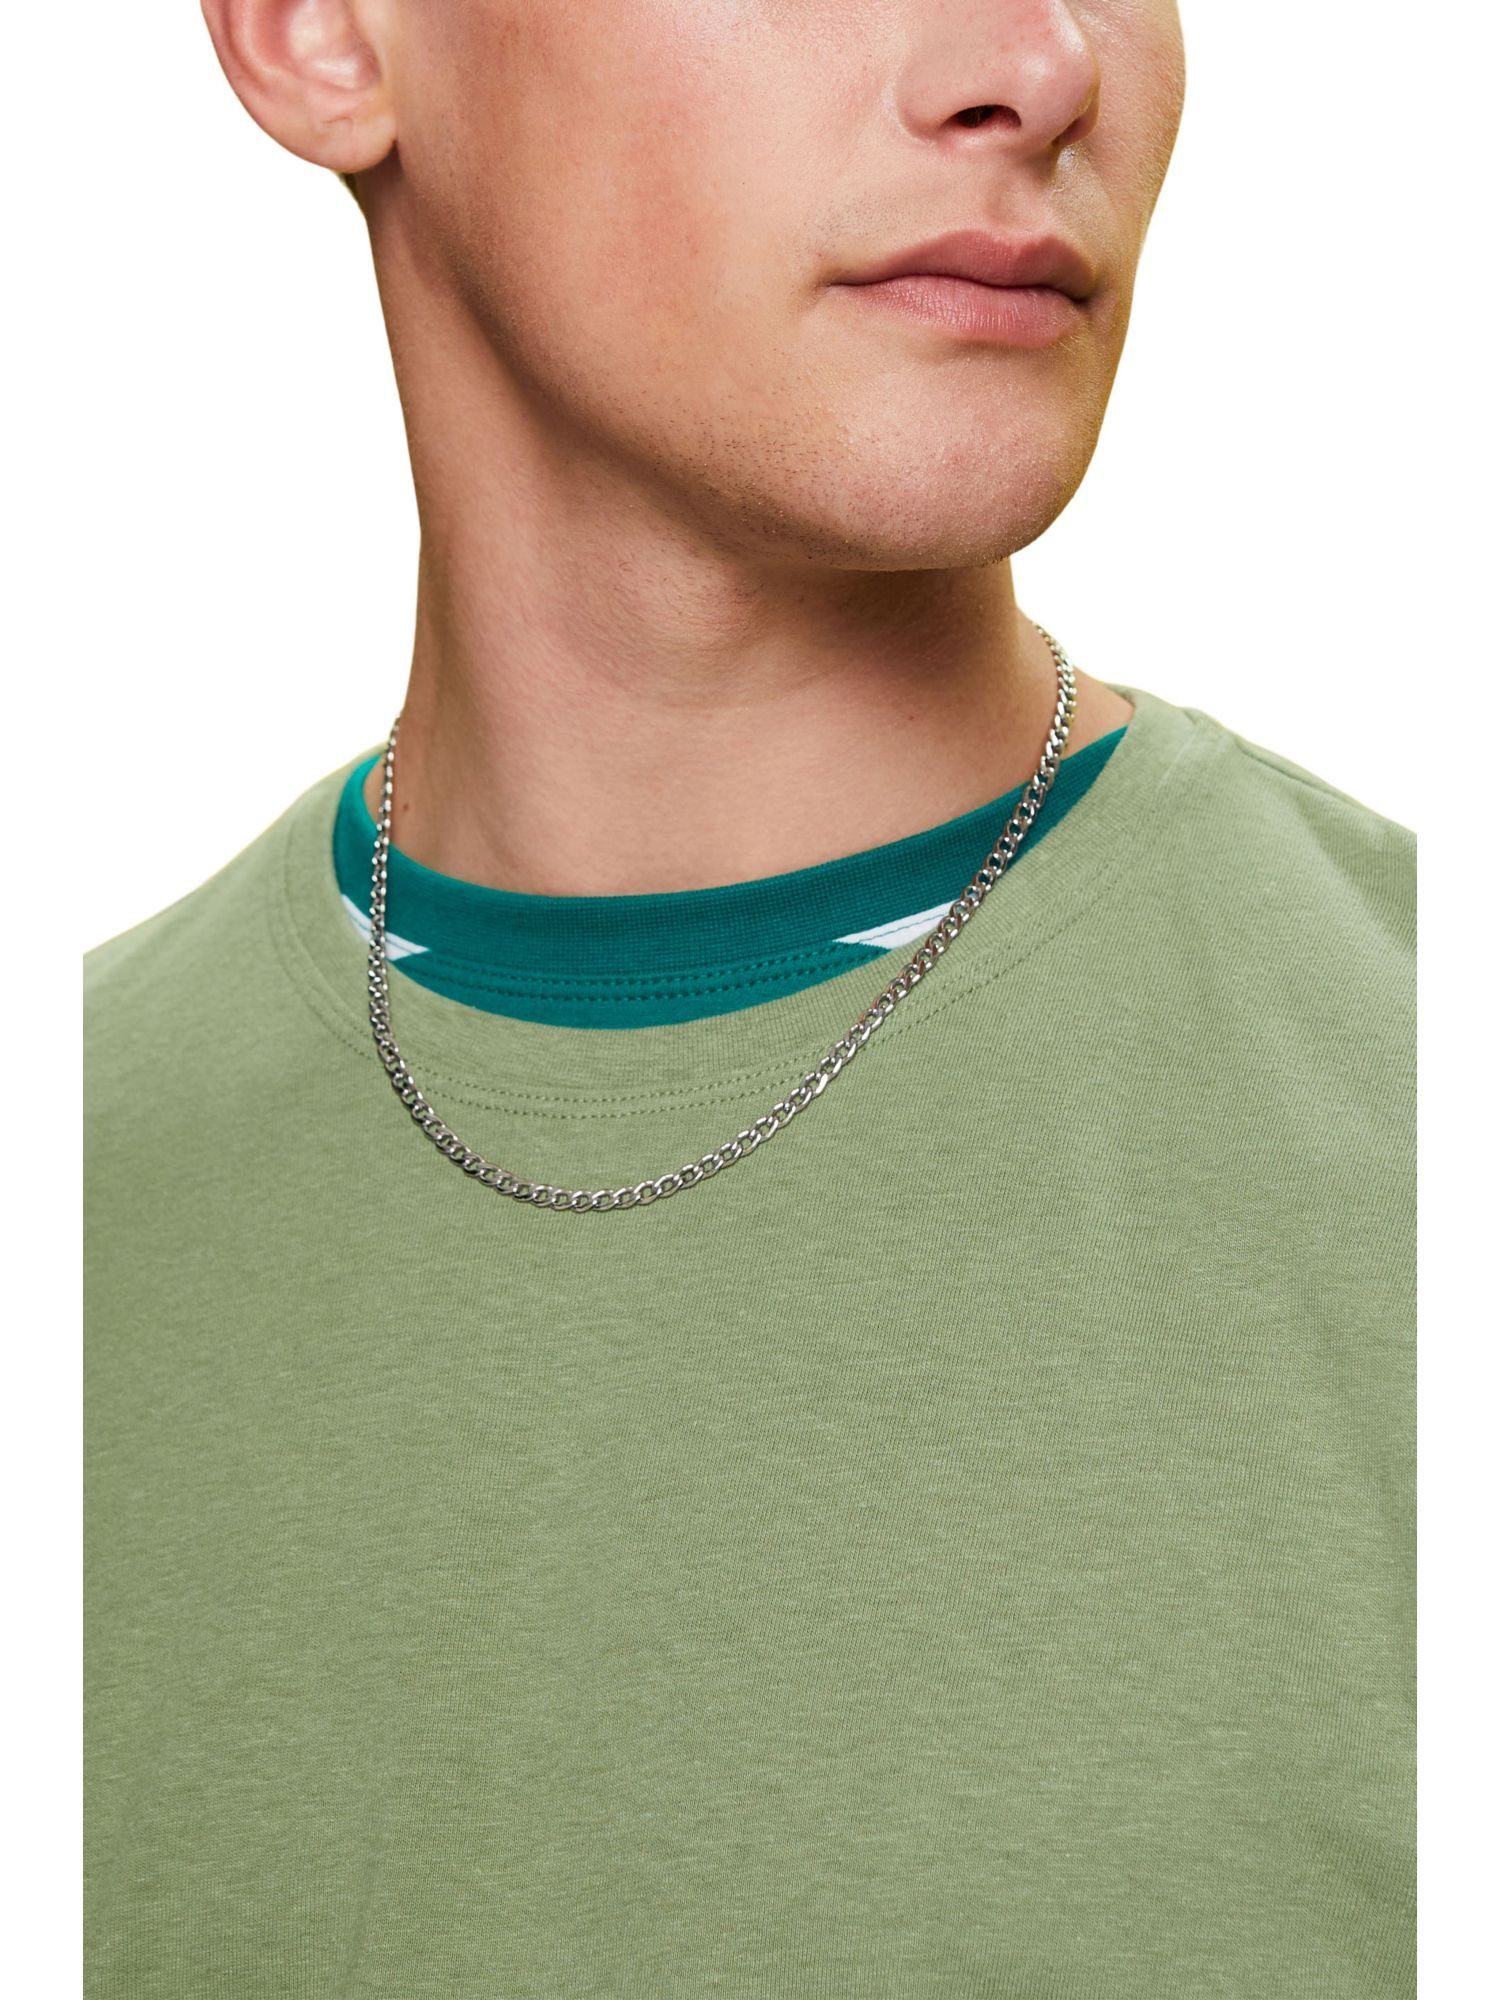 aus glänzendem Kette Metall Esprit Halskette mit Anhänger